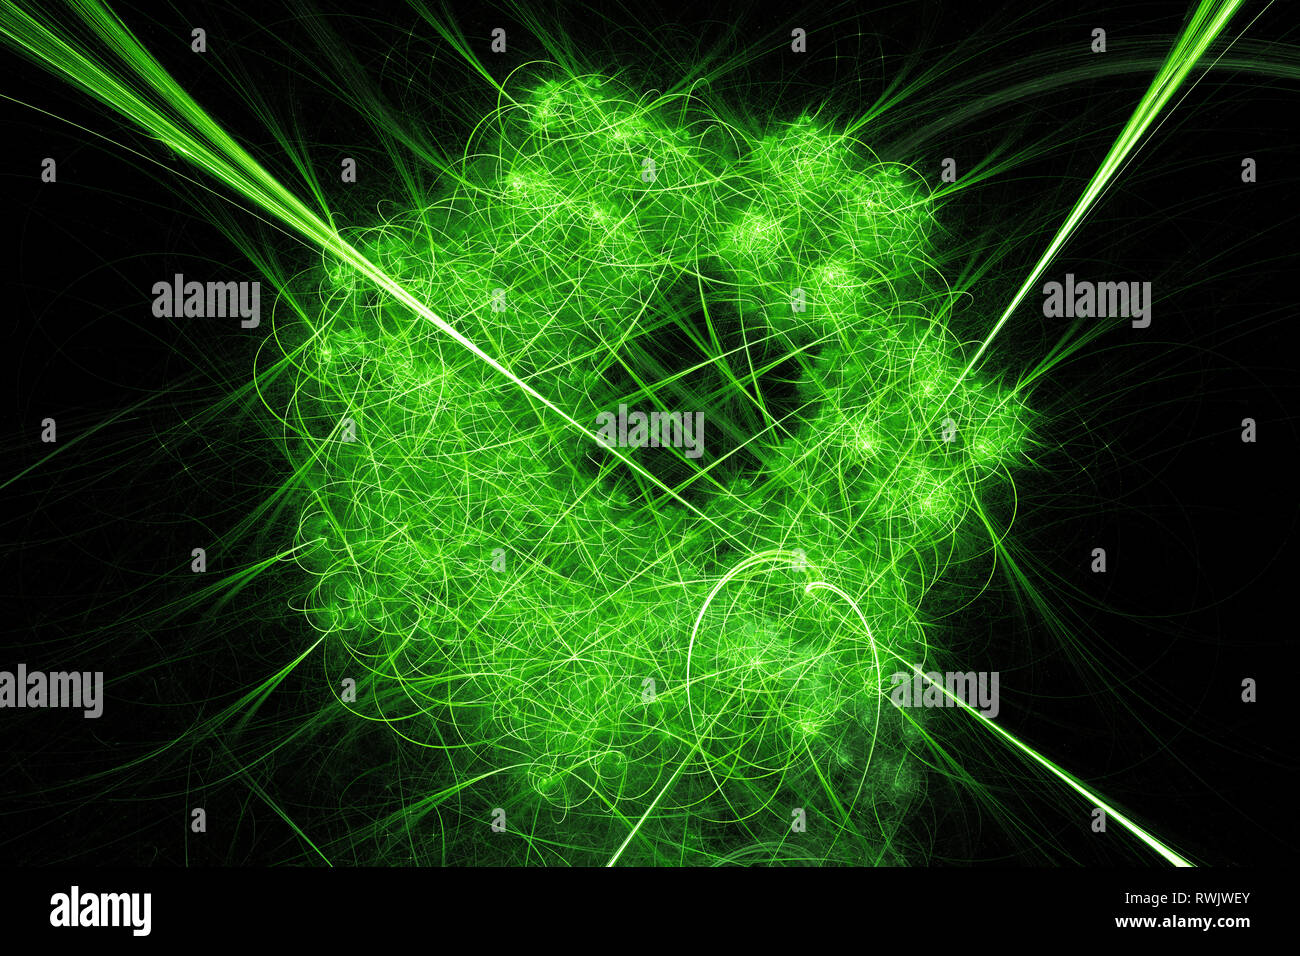 Grün leuchtende abstrakte arc Netzwerk, Computer-generierte Zusammenfassung Hintergrund, 3D-Rendering Stockfoto